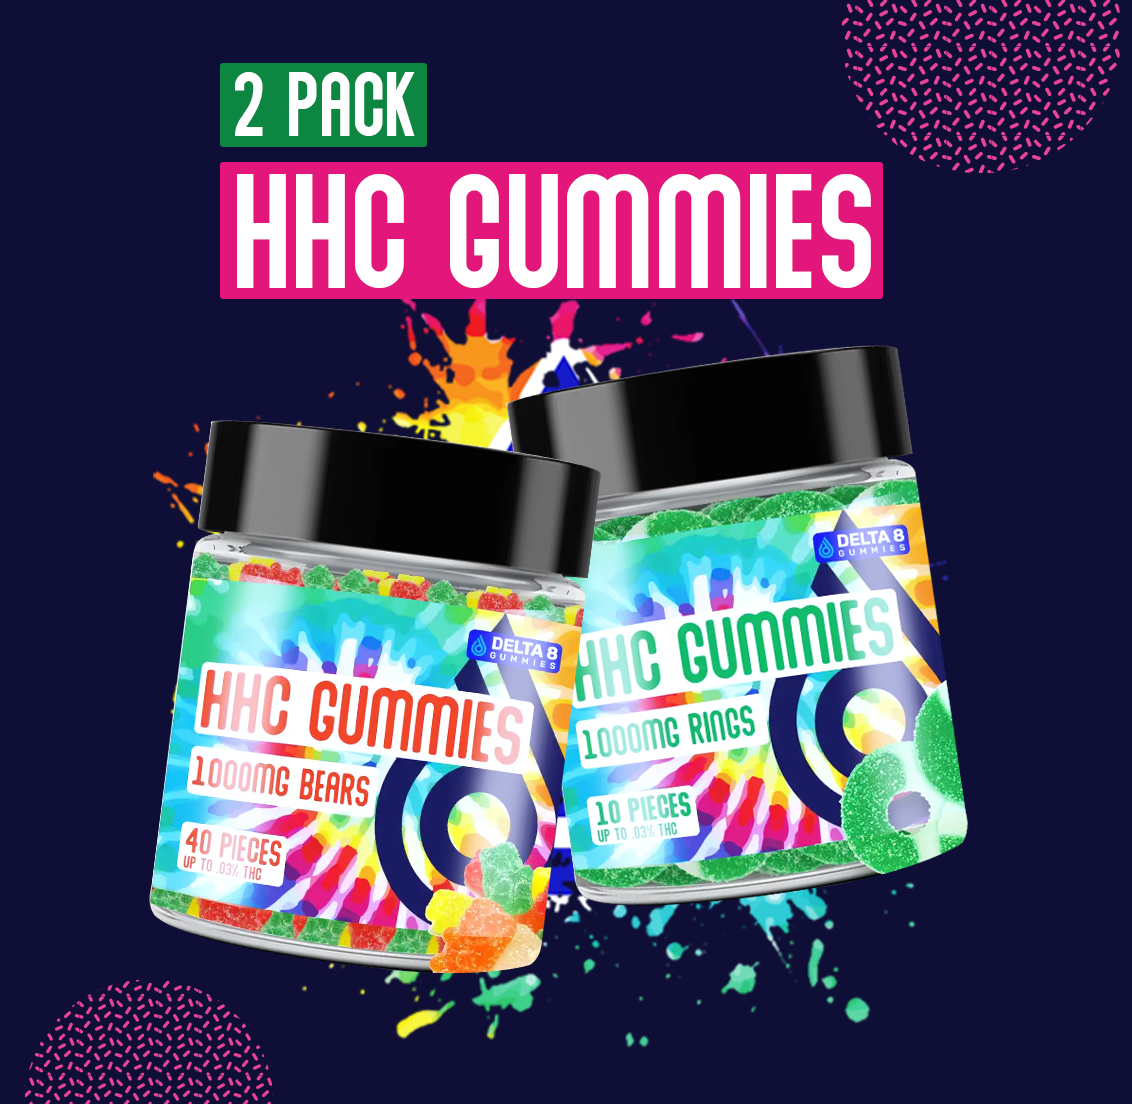 HHC Gummies 2 Pack